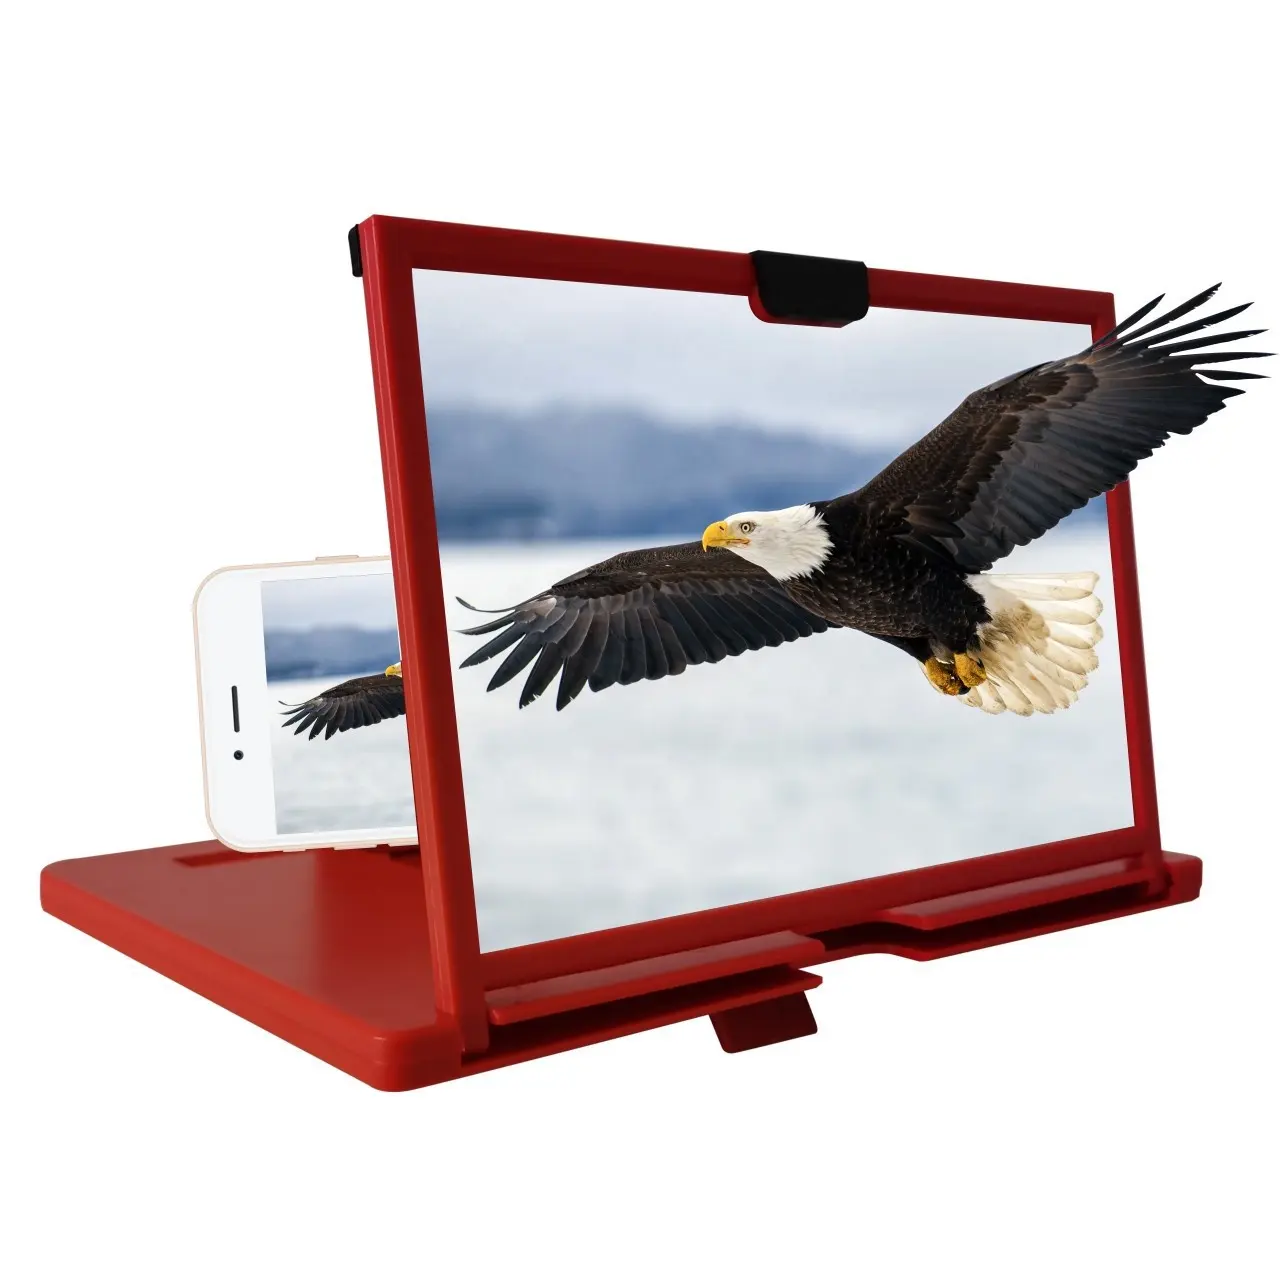 3D 스크린 증폭기 휴대 전화 확대 HD 스탠드 비디오 접이식 화면 확대 눈 보호 홀더 접이식 스탠드